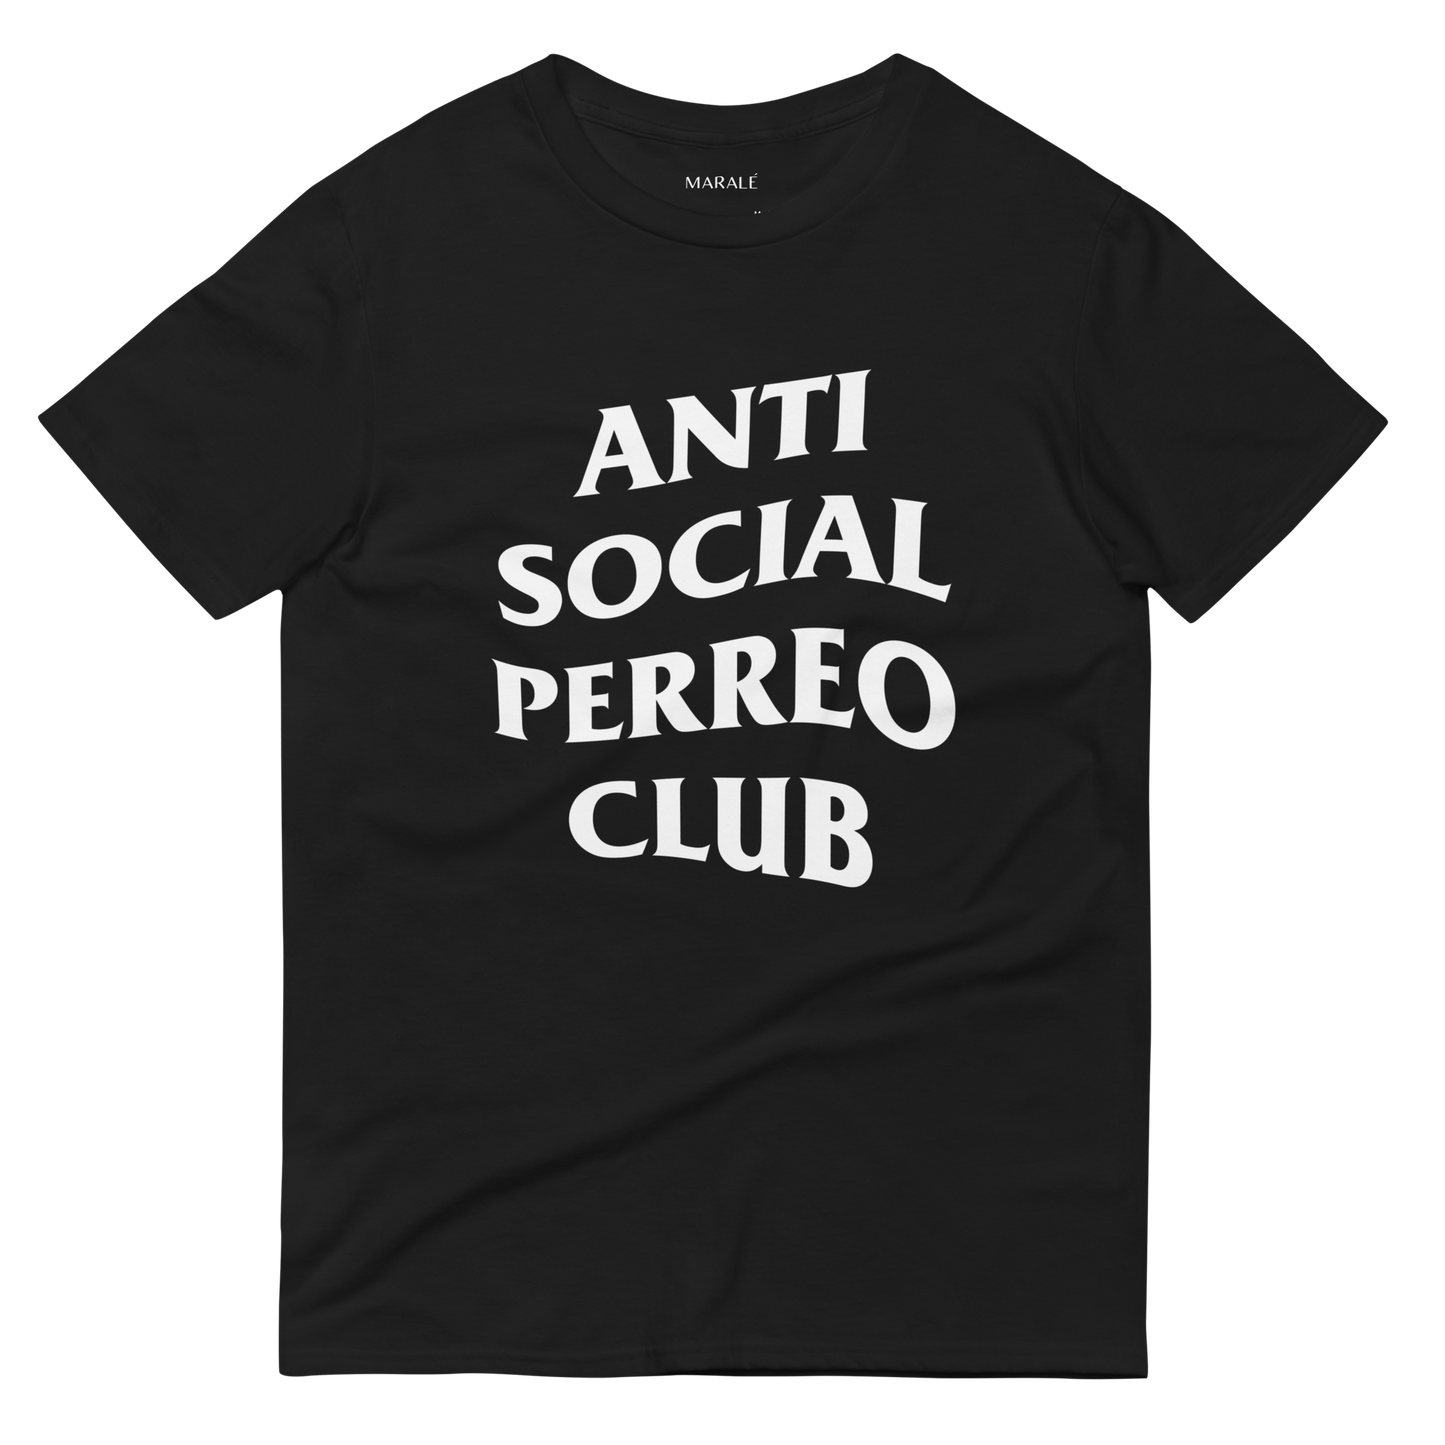 Anti Social Perreo Club T-Shirt